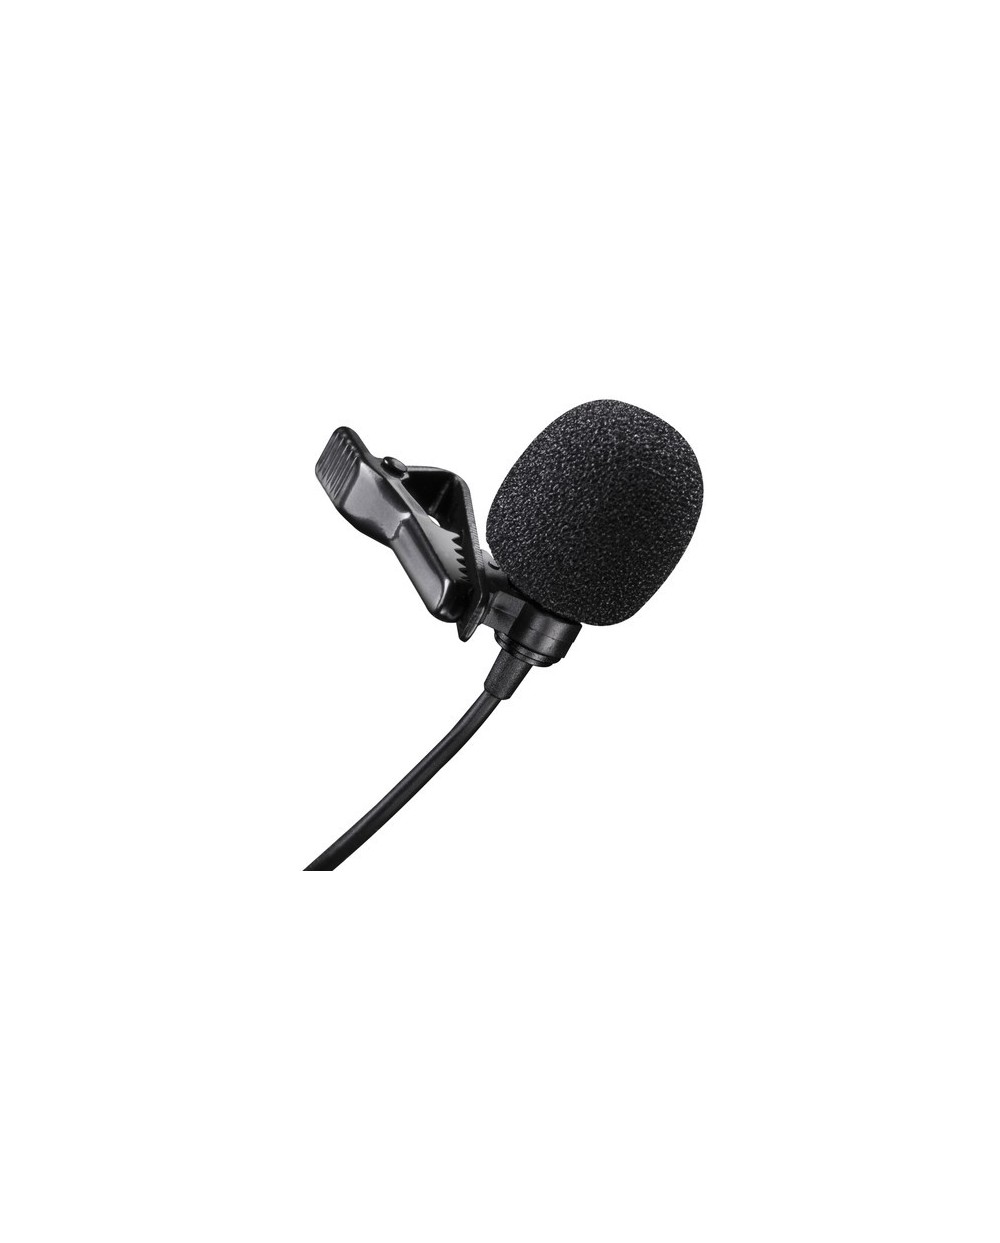 Μικρόφωνο Κάμερας and Smartphone EZRA MF02 Lavalier Microphone